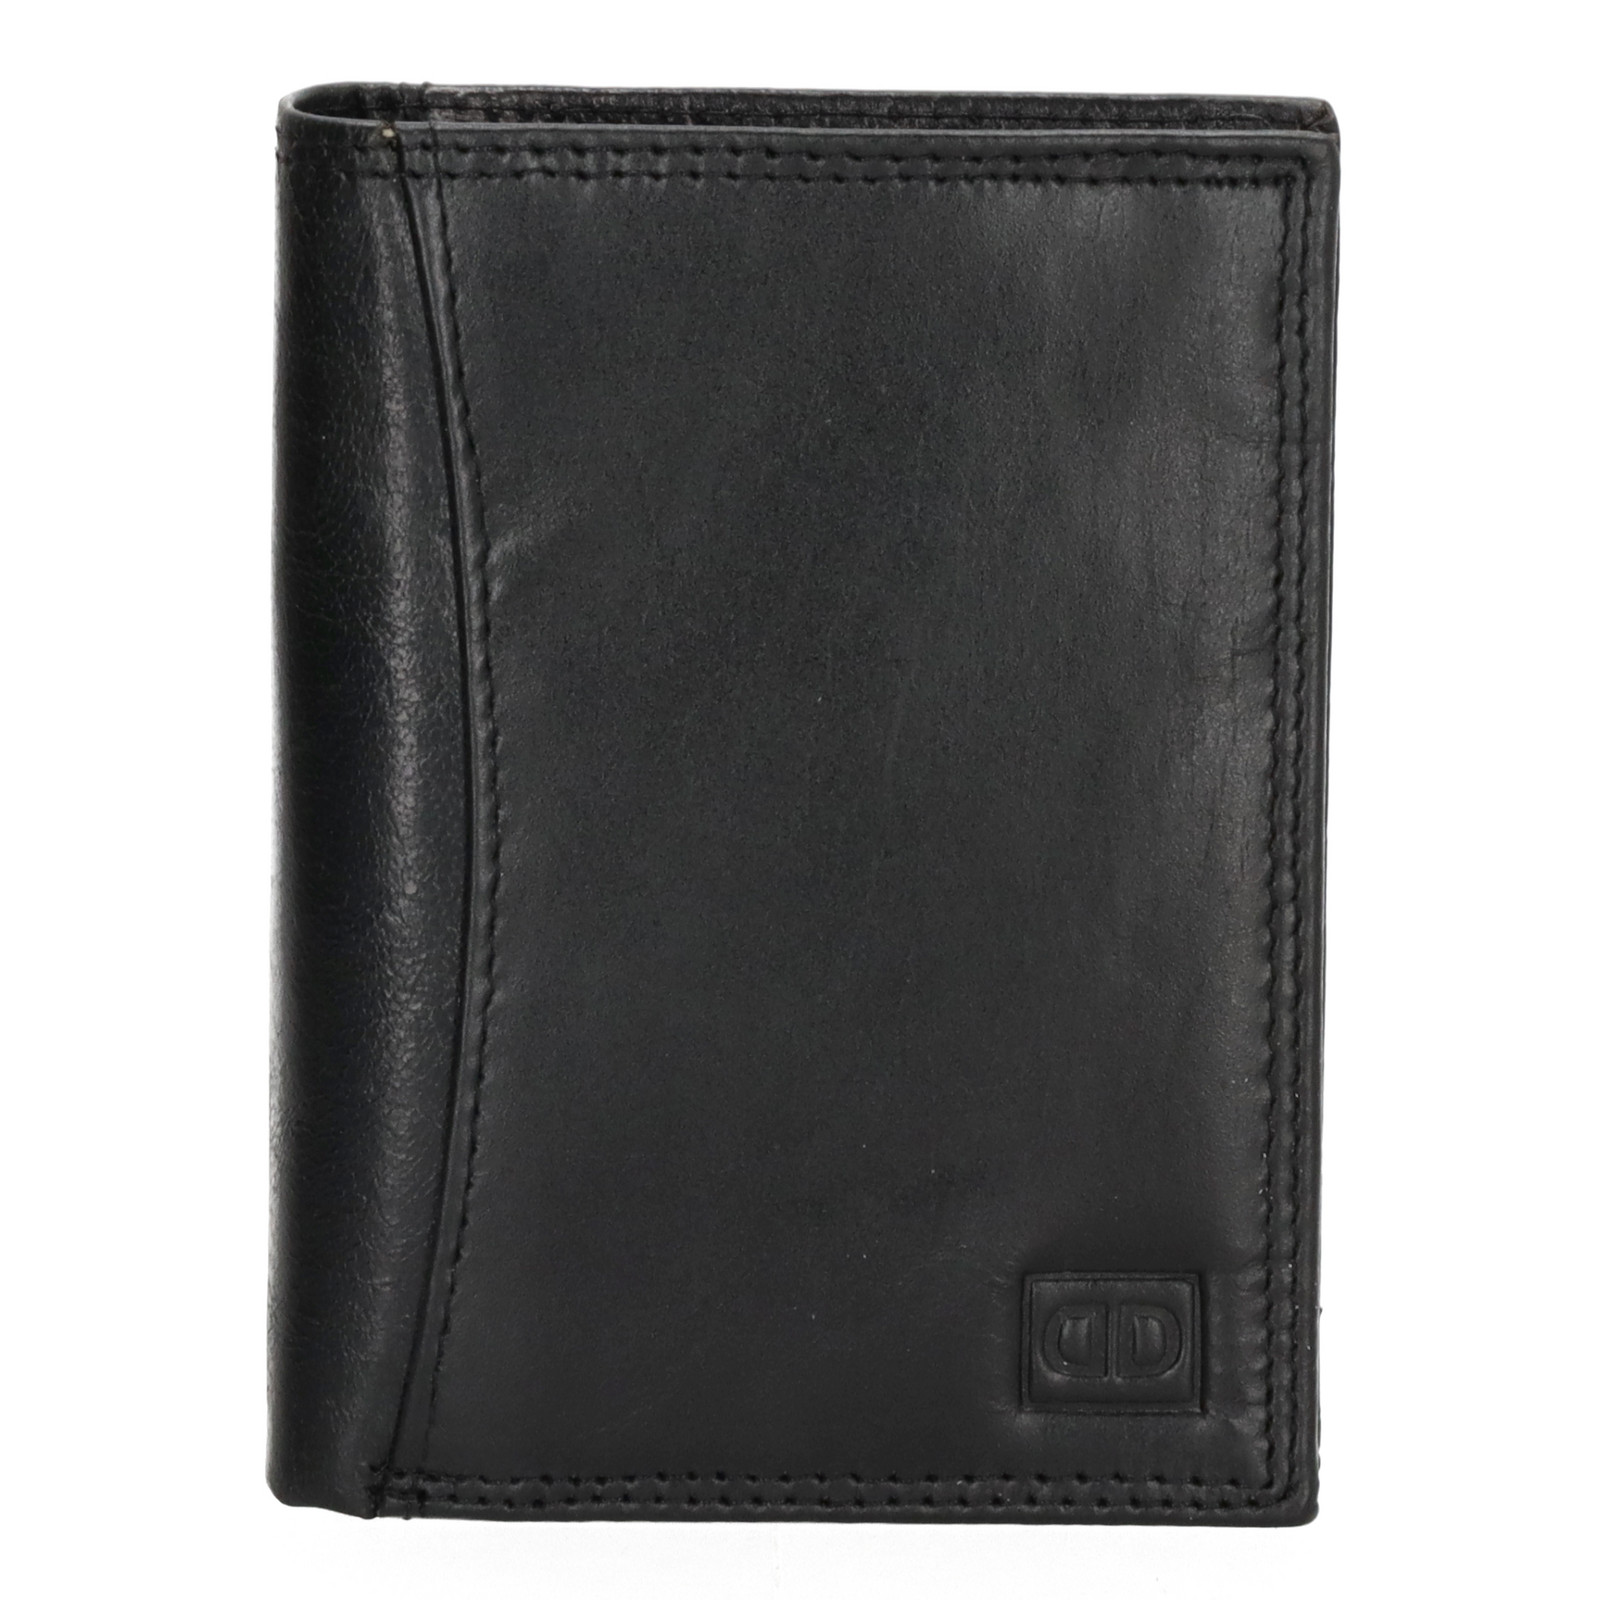 Double-D Da Vinci pánská kožená peněženka - RFID - černá